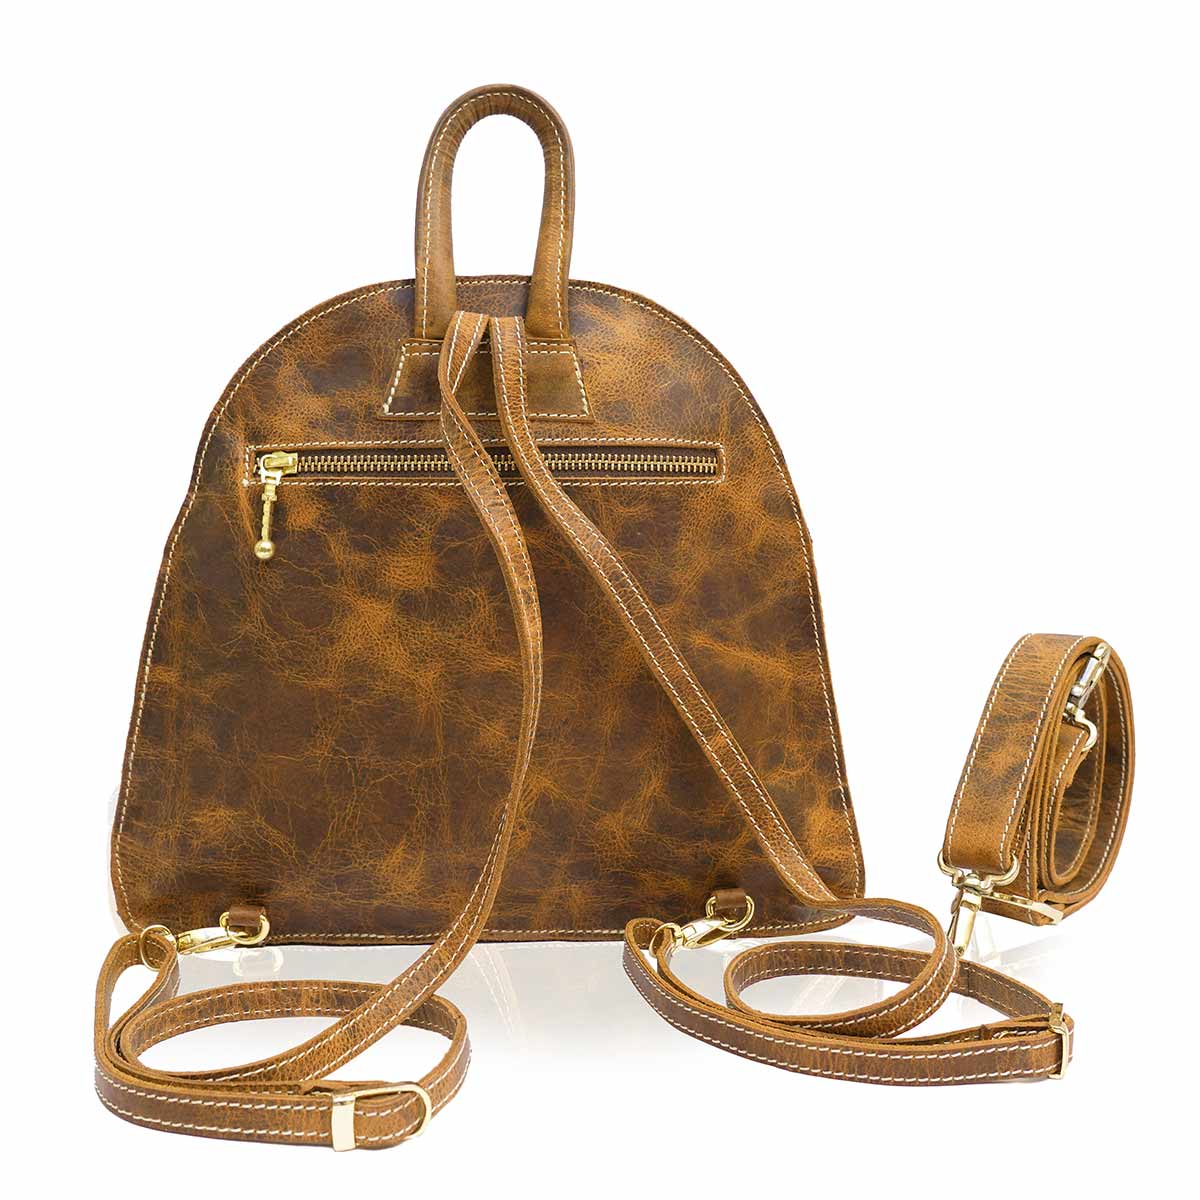 MiniChur- Leather Backpack cum Sling Bag